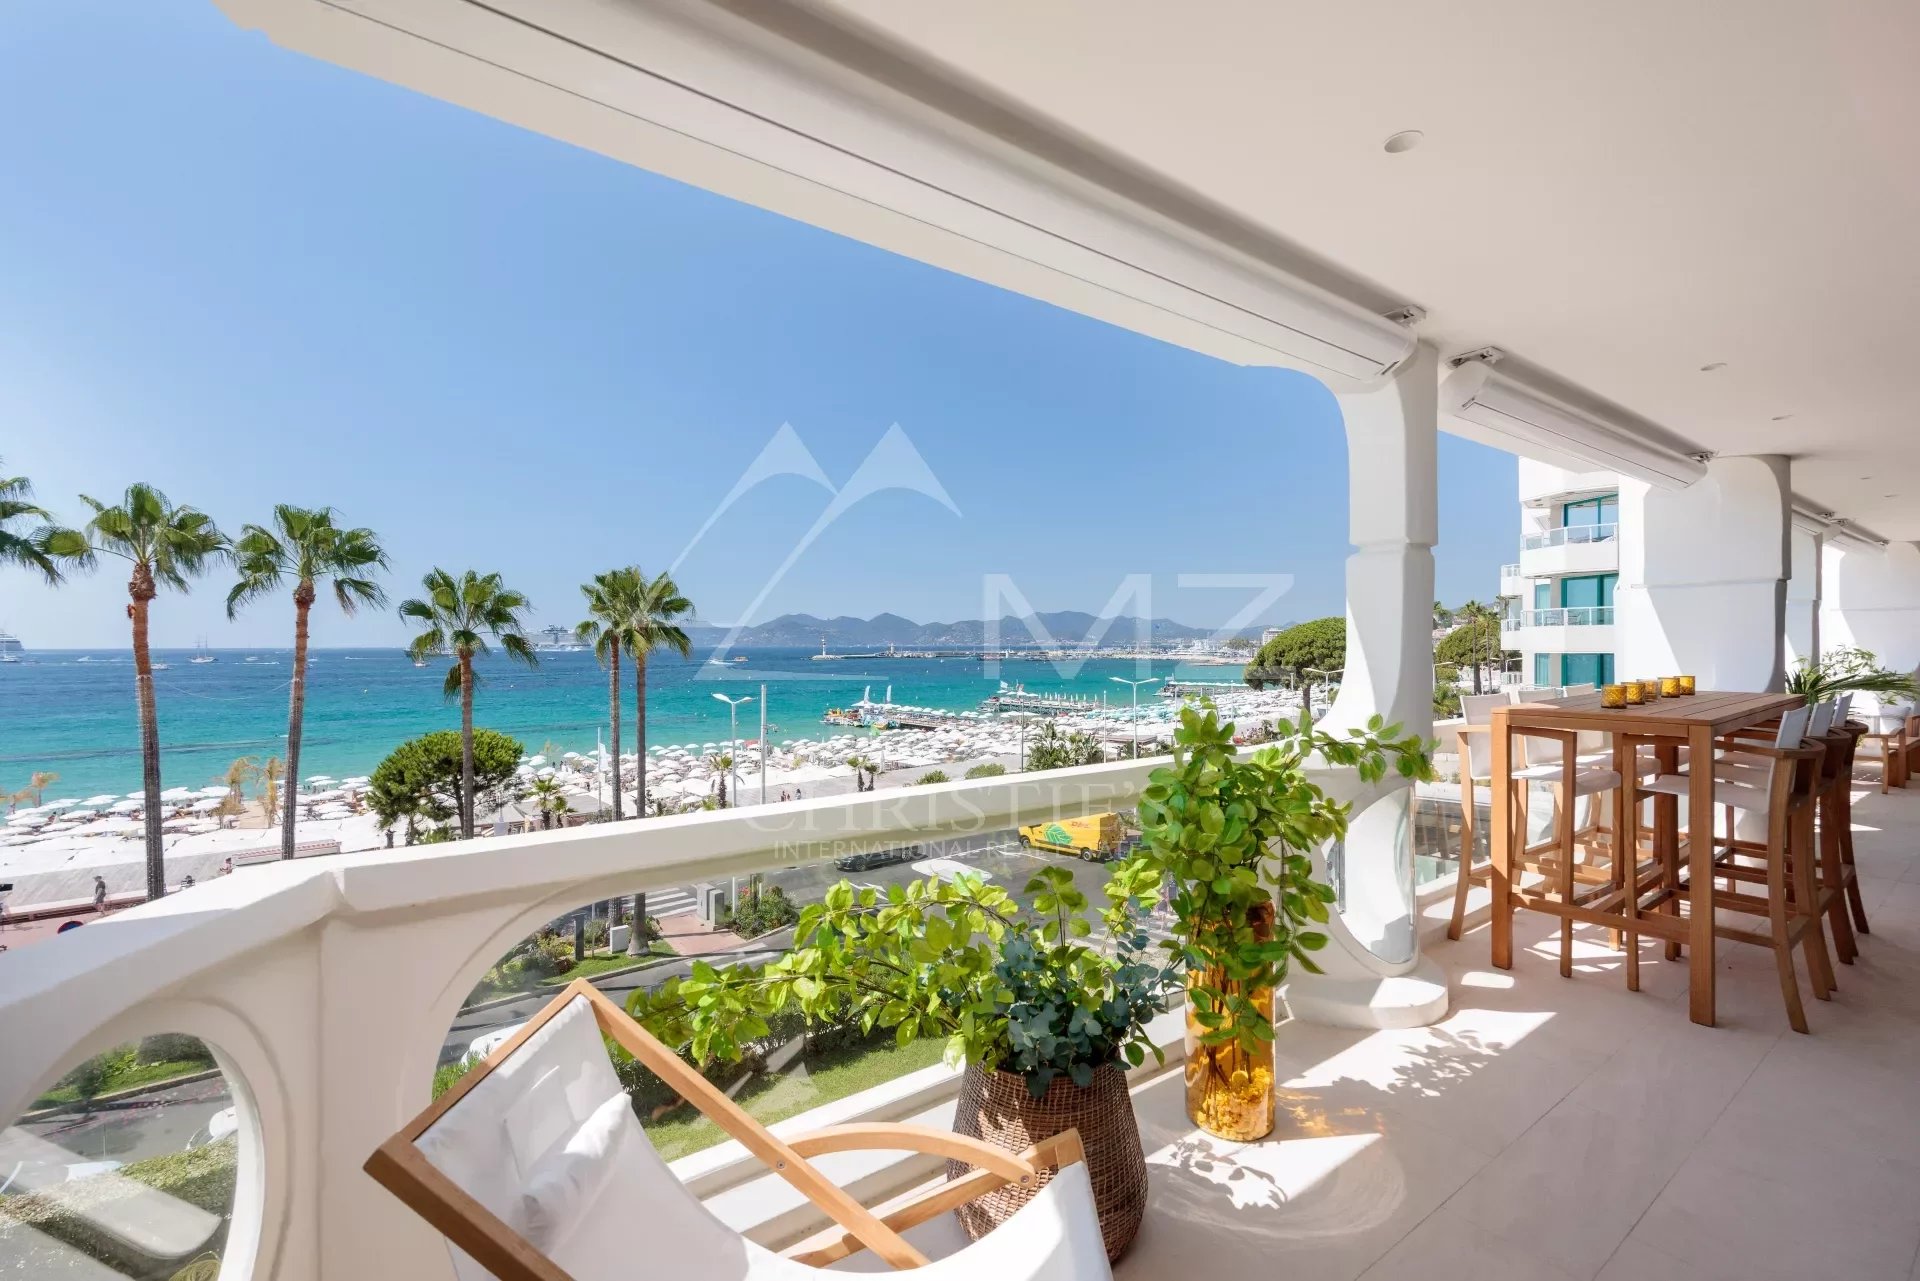 Cannes - Croisette - Sumptuous sea view apartment